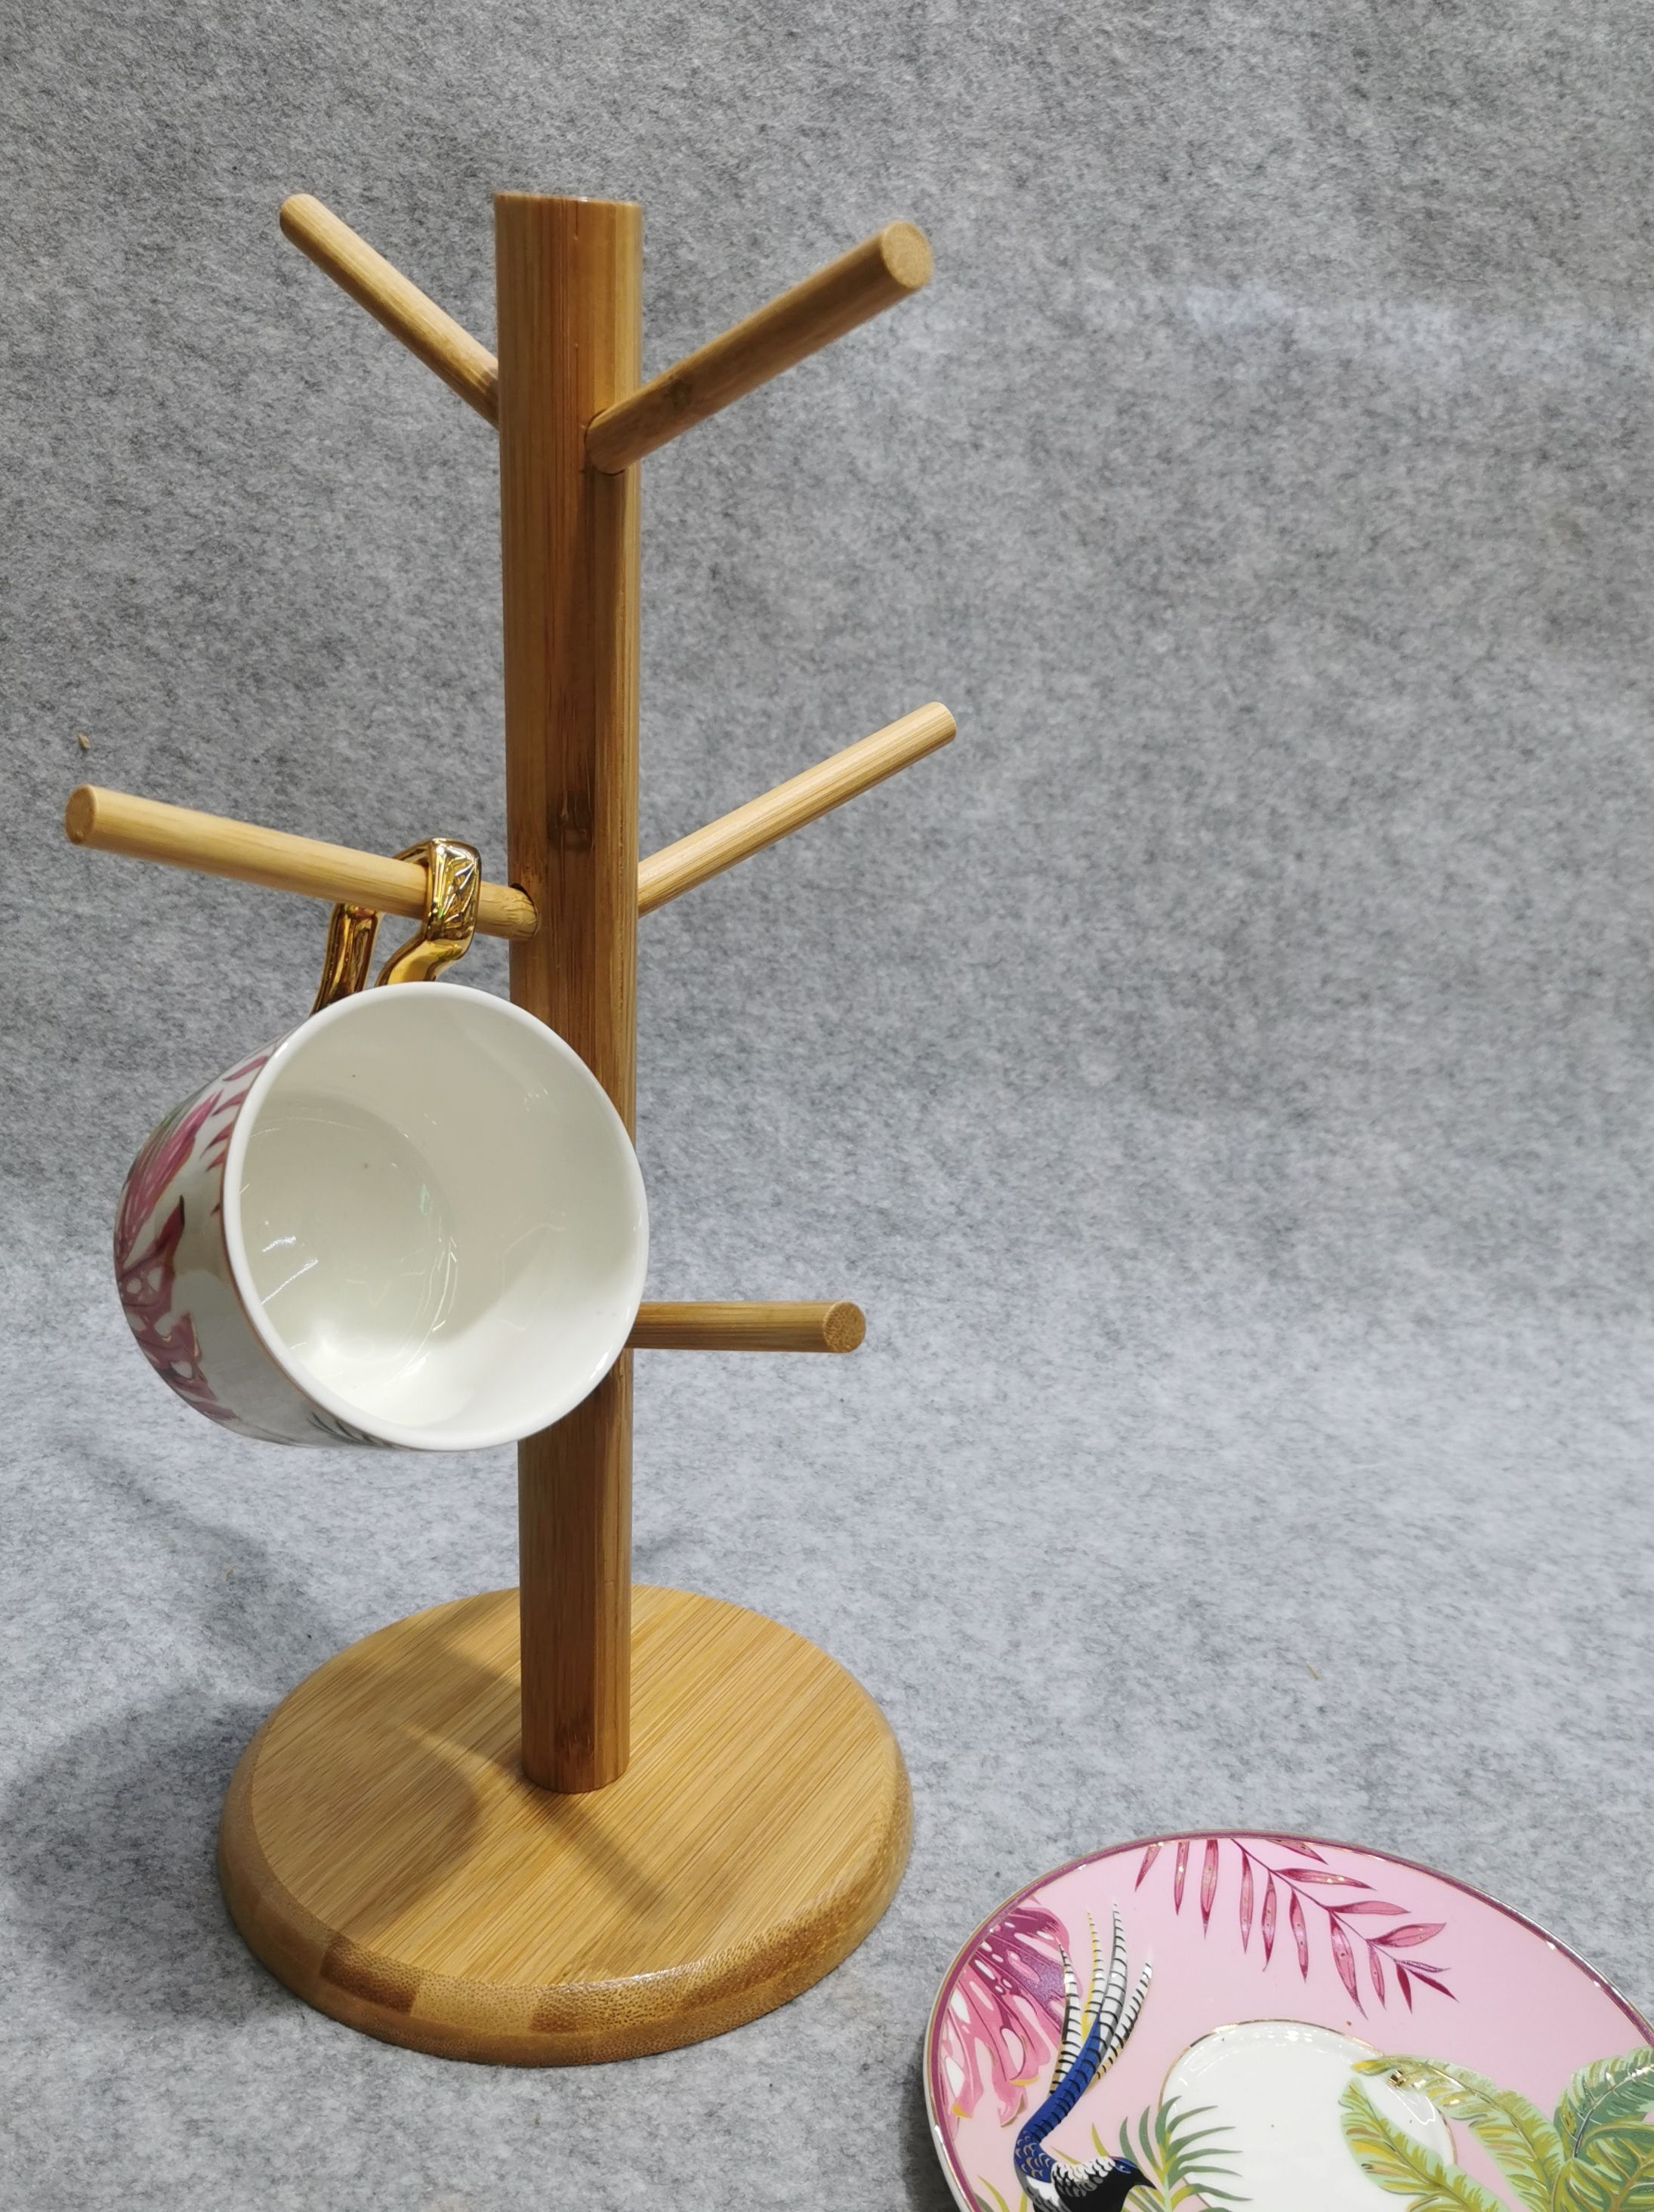 捷豪竹木竹制日式创意茶杯沥水厨房家用木制收纳水杯倒挂置物架详情图3